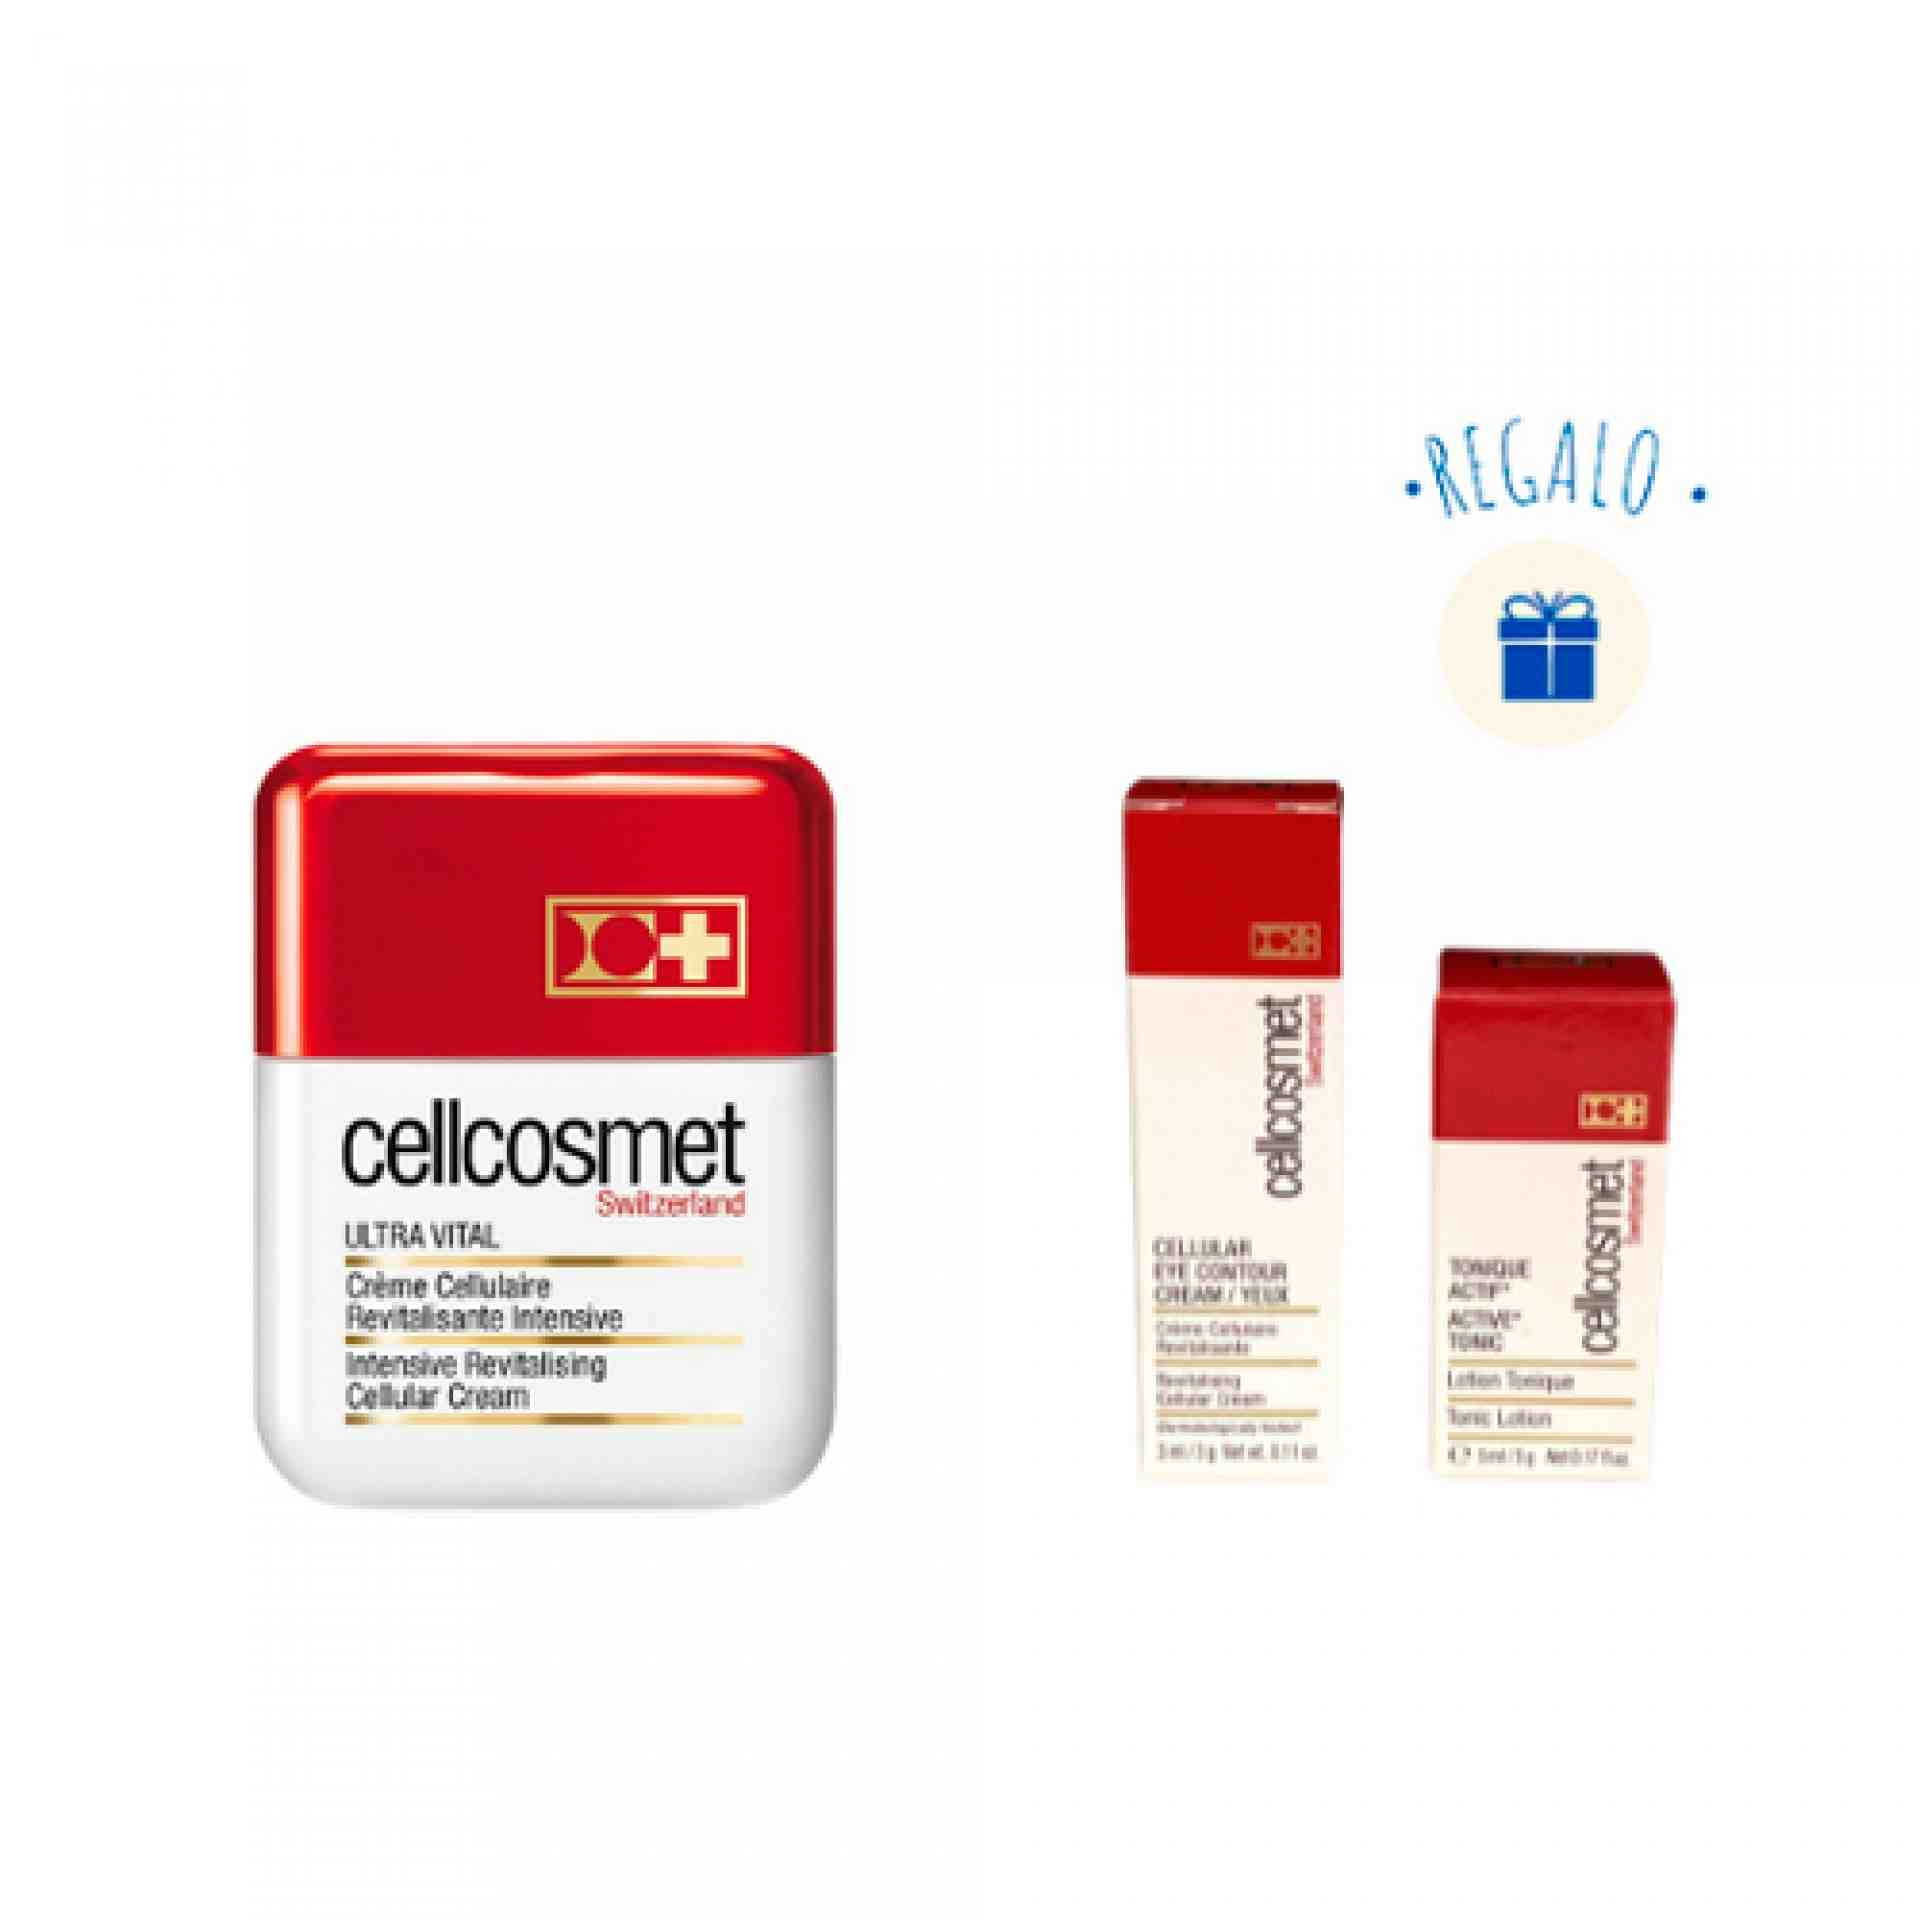 Ultra Vital 50ml + Regalo Minitallas Cellular Eye Contour Cream 3ml + Tonique Actif 5ml - Cellcosmet ®